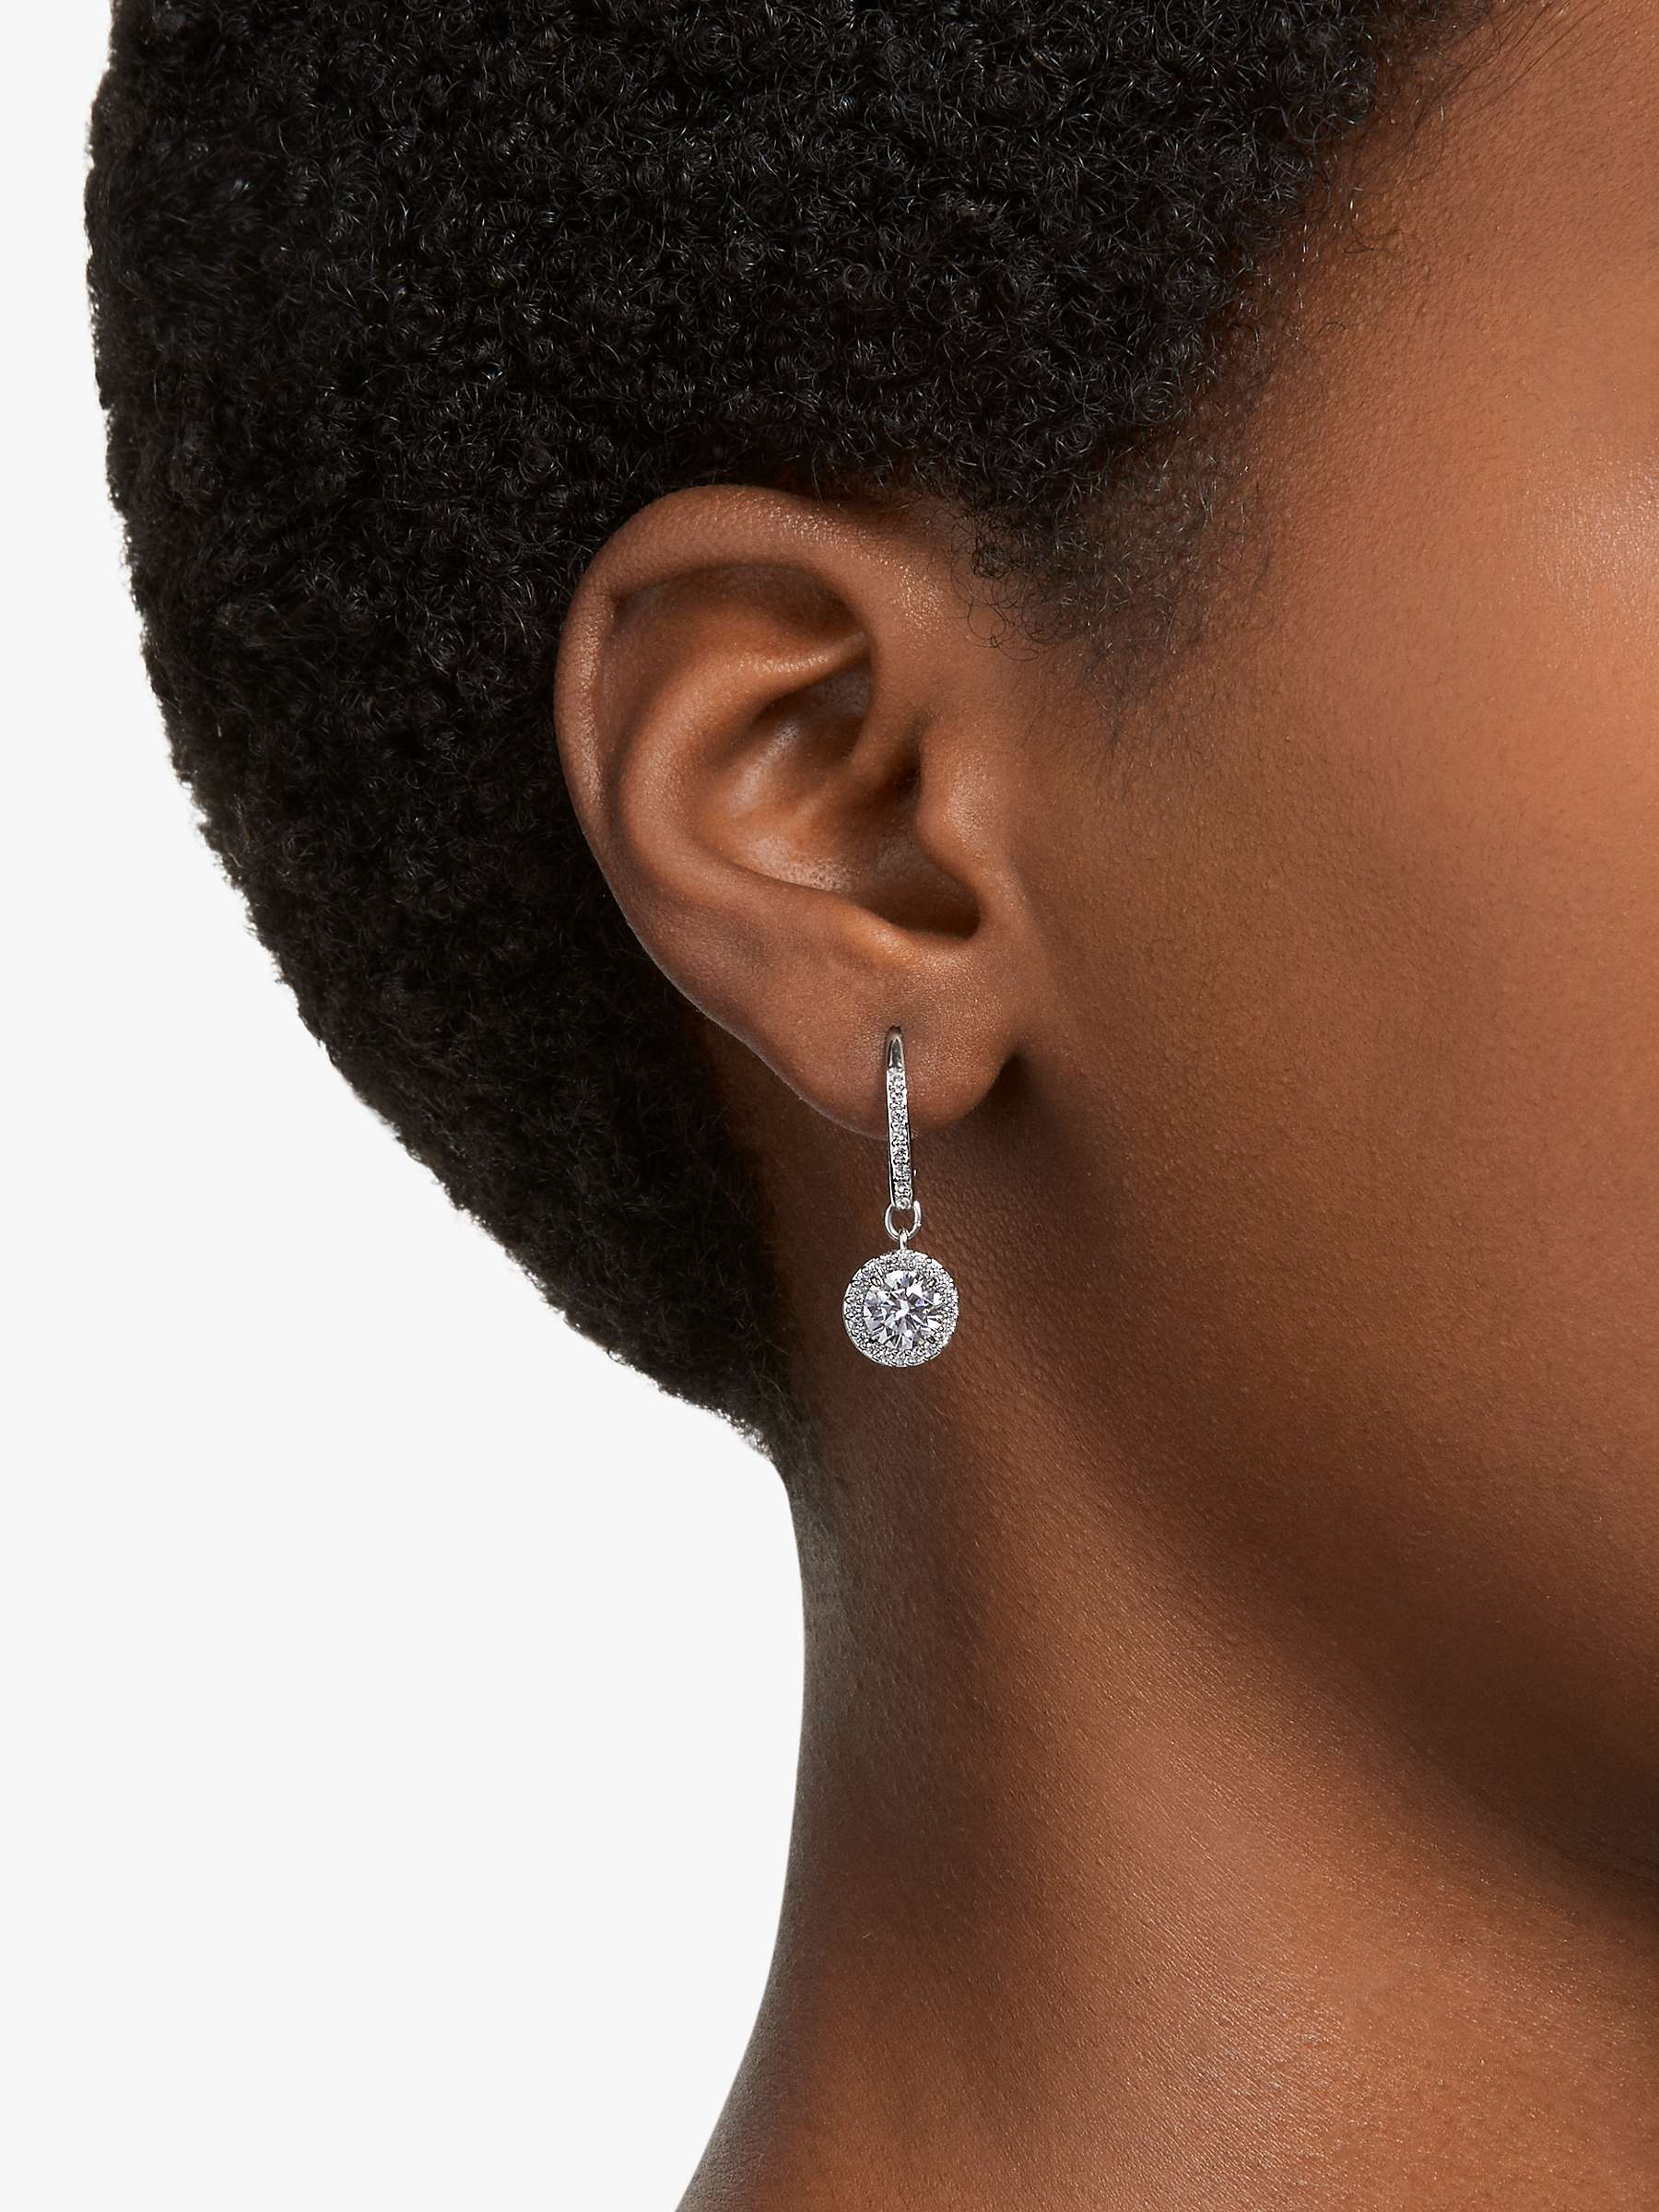 Buy Swarovski Constella Round Crystal Hoop Earrings, Silver Online at johnlewis.com